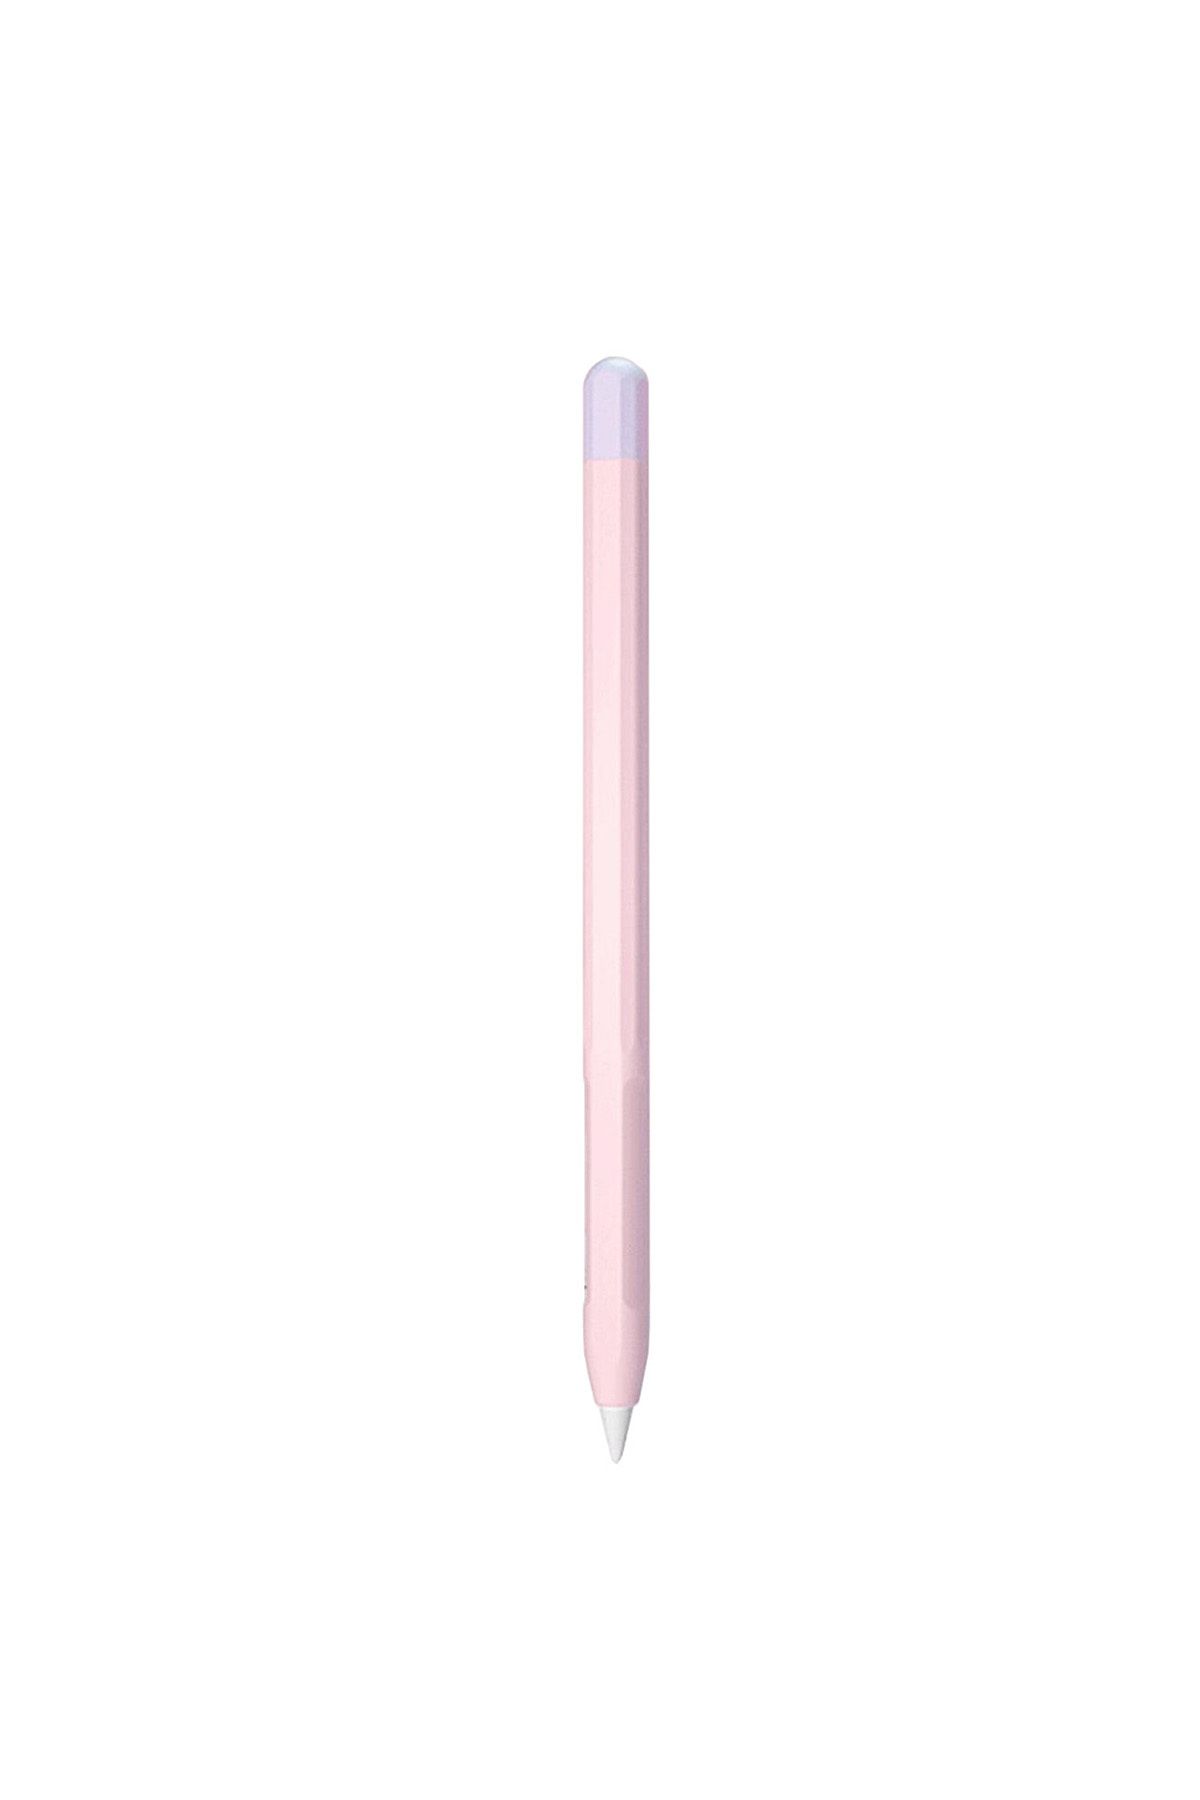 Tagomoon Apple Pencil (2. nesil) Uyumlu Kılıf Çift Renkli Kaydırmaz Silikon Koruyucu